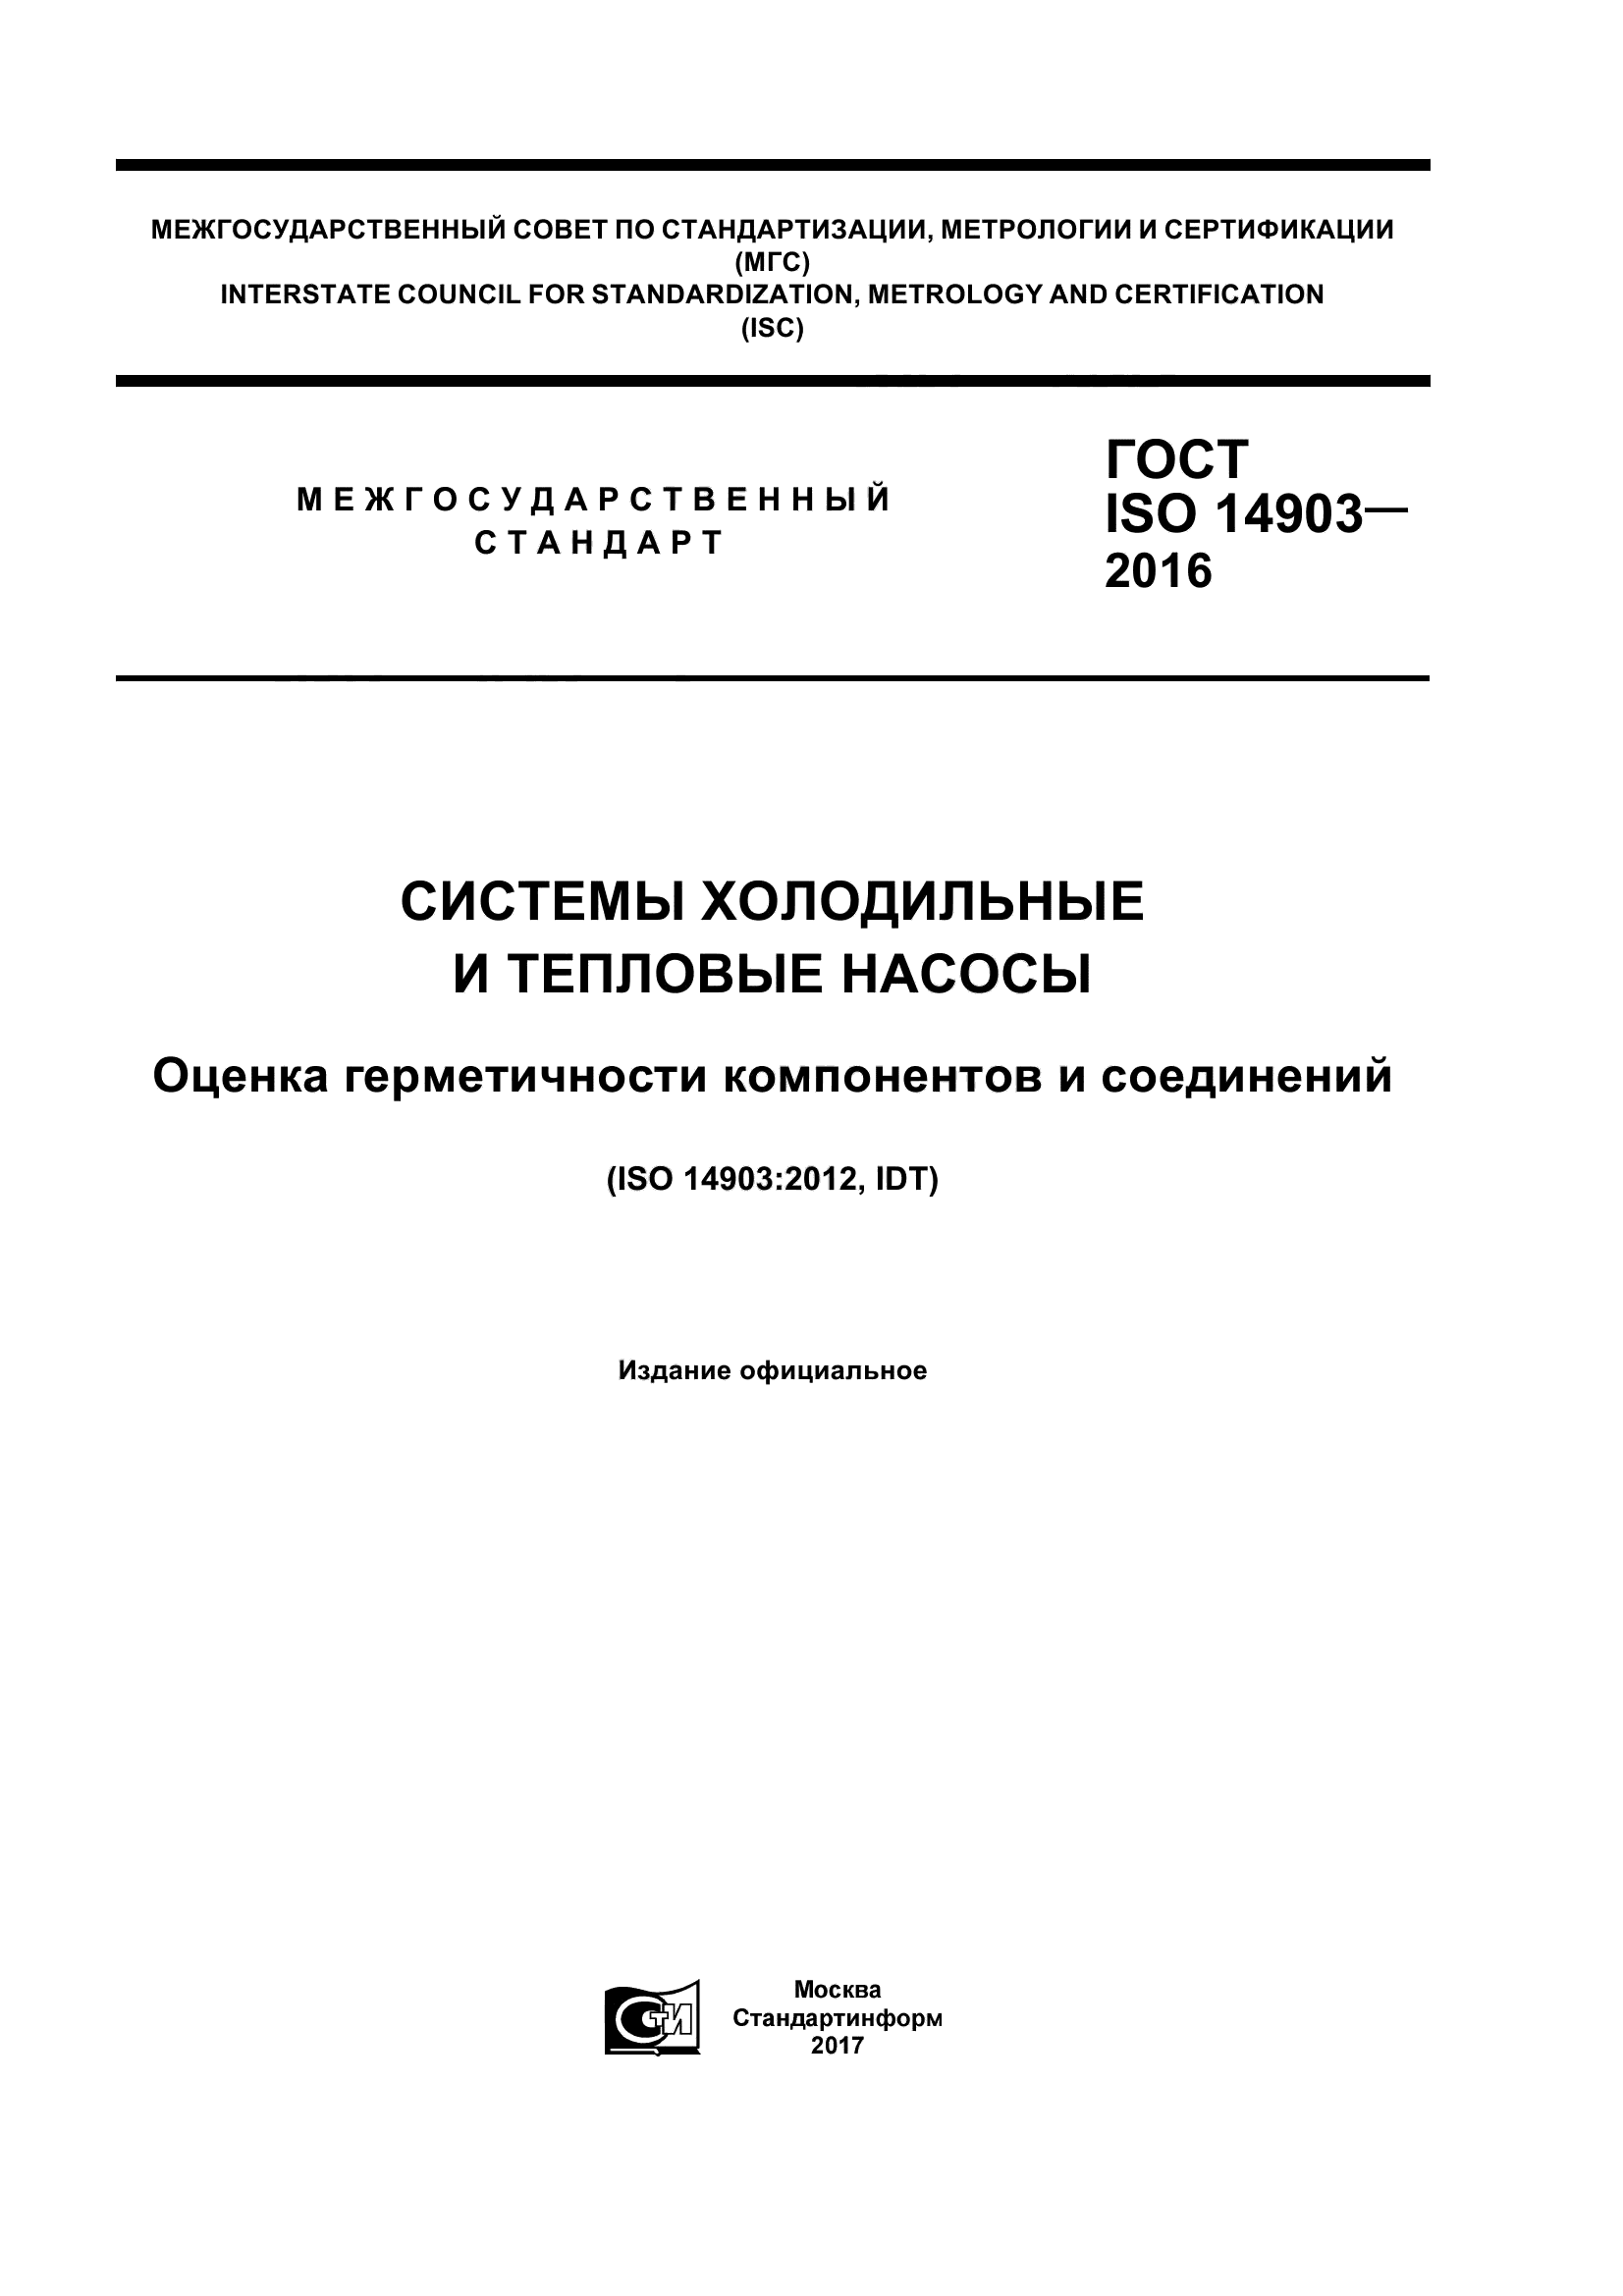 ГОСТ ISO 14903-2016